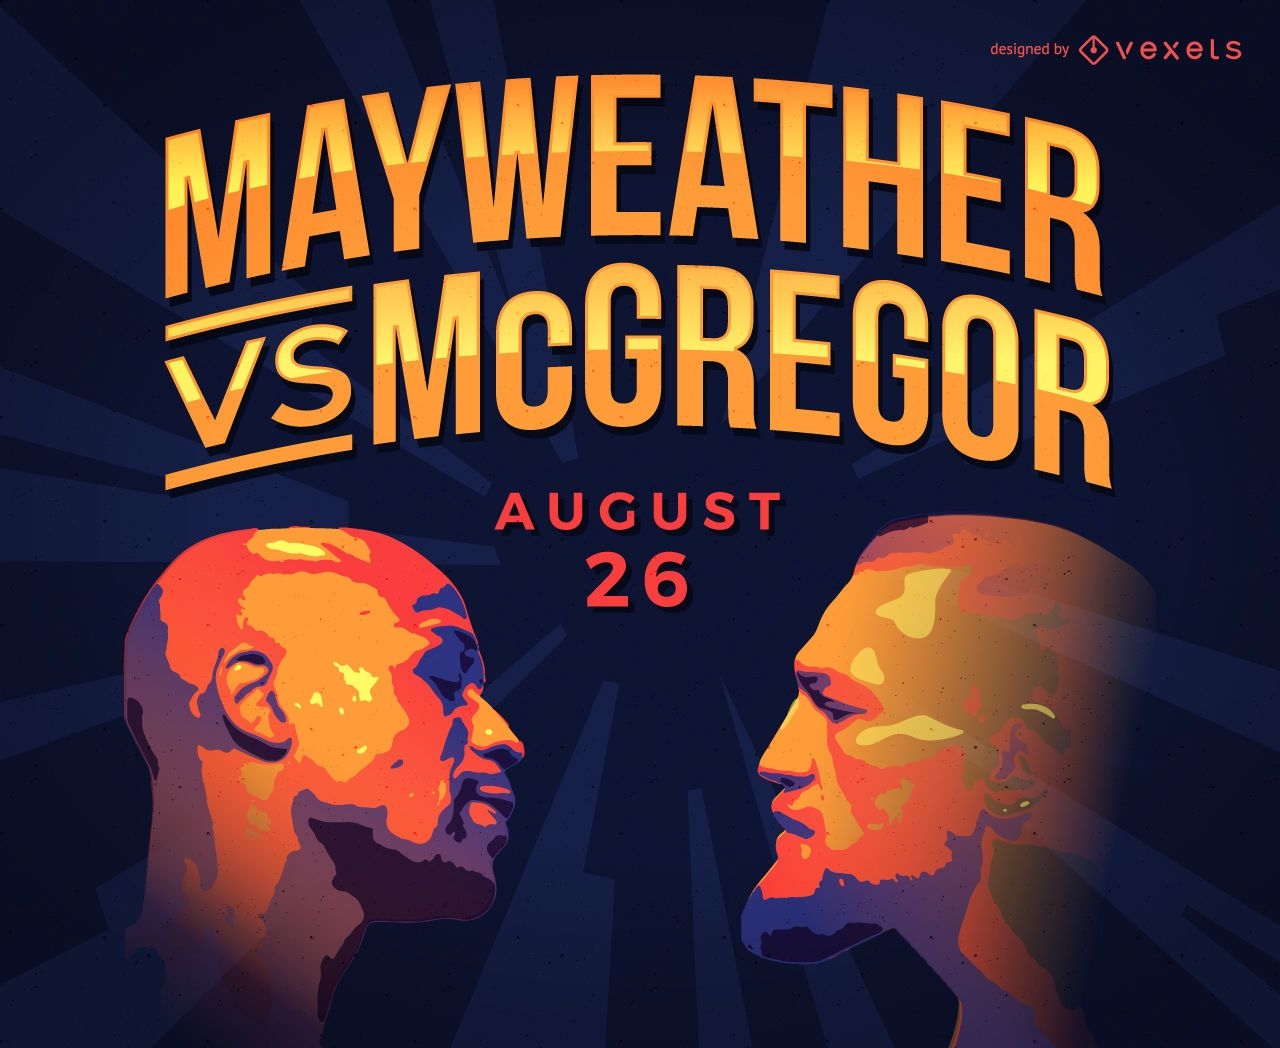 Mercadoria de ilustra??o de boxe Mayweather vs McGregor